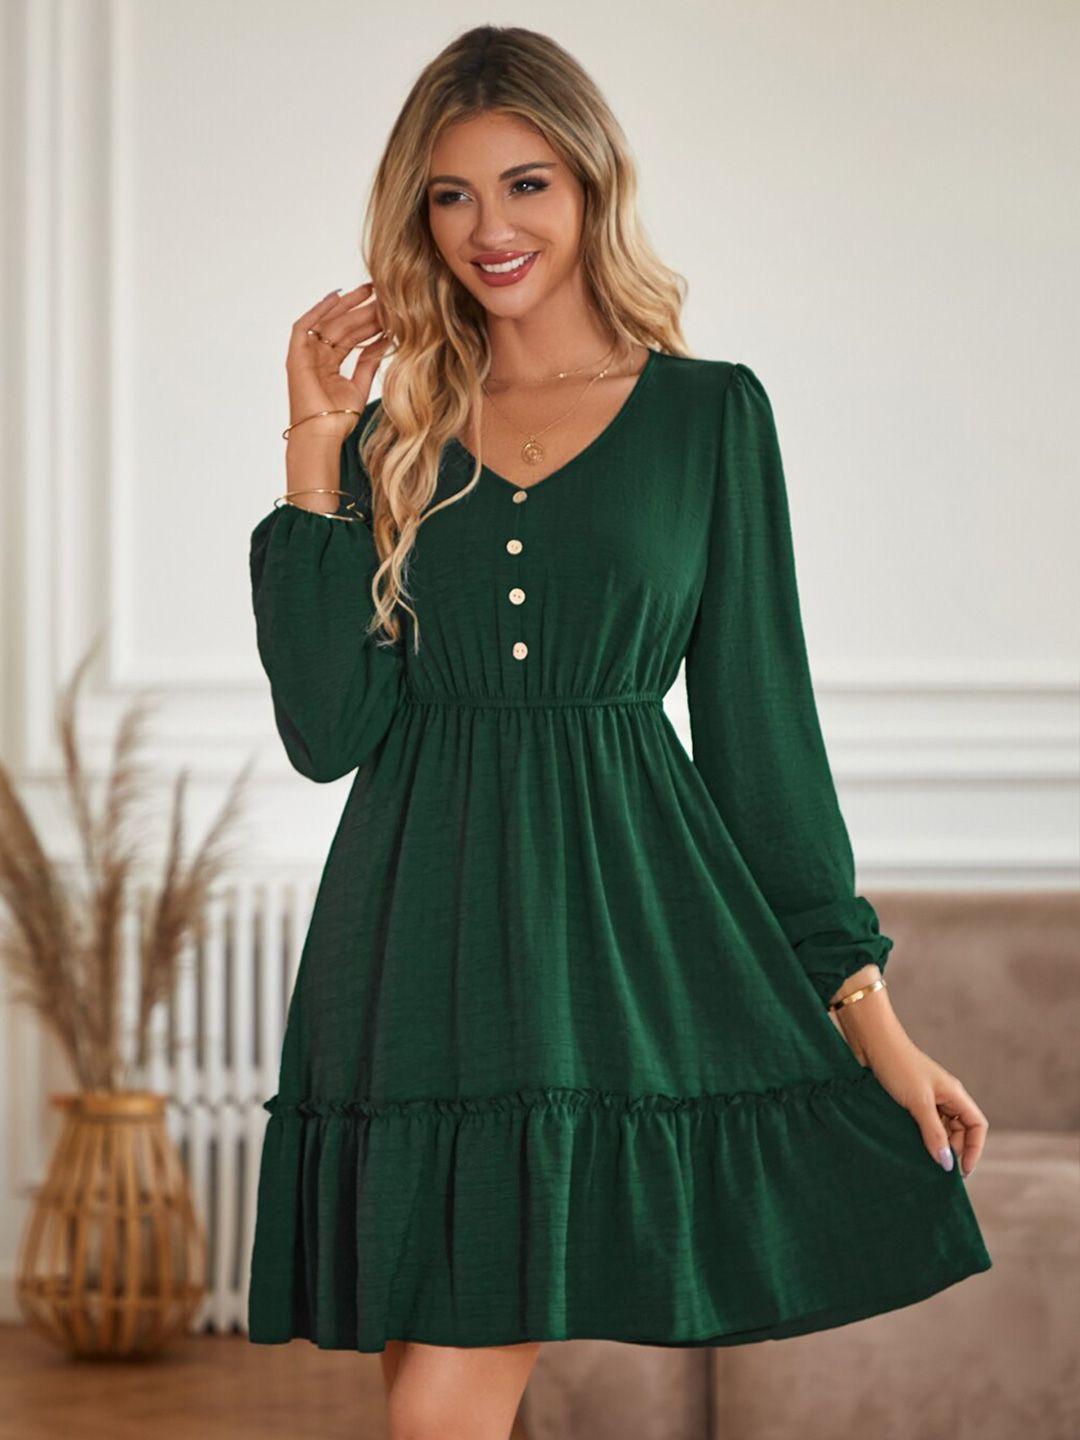 stylecast green puff sleeve a-line dress